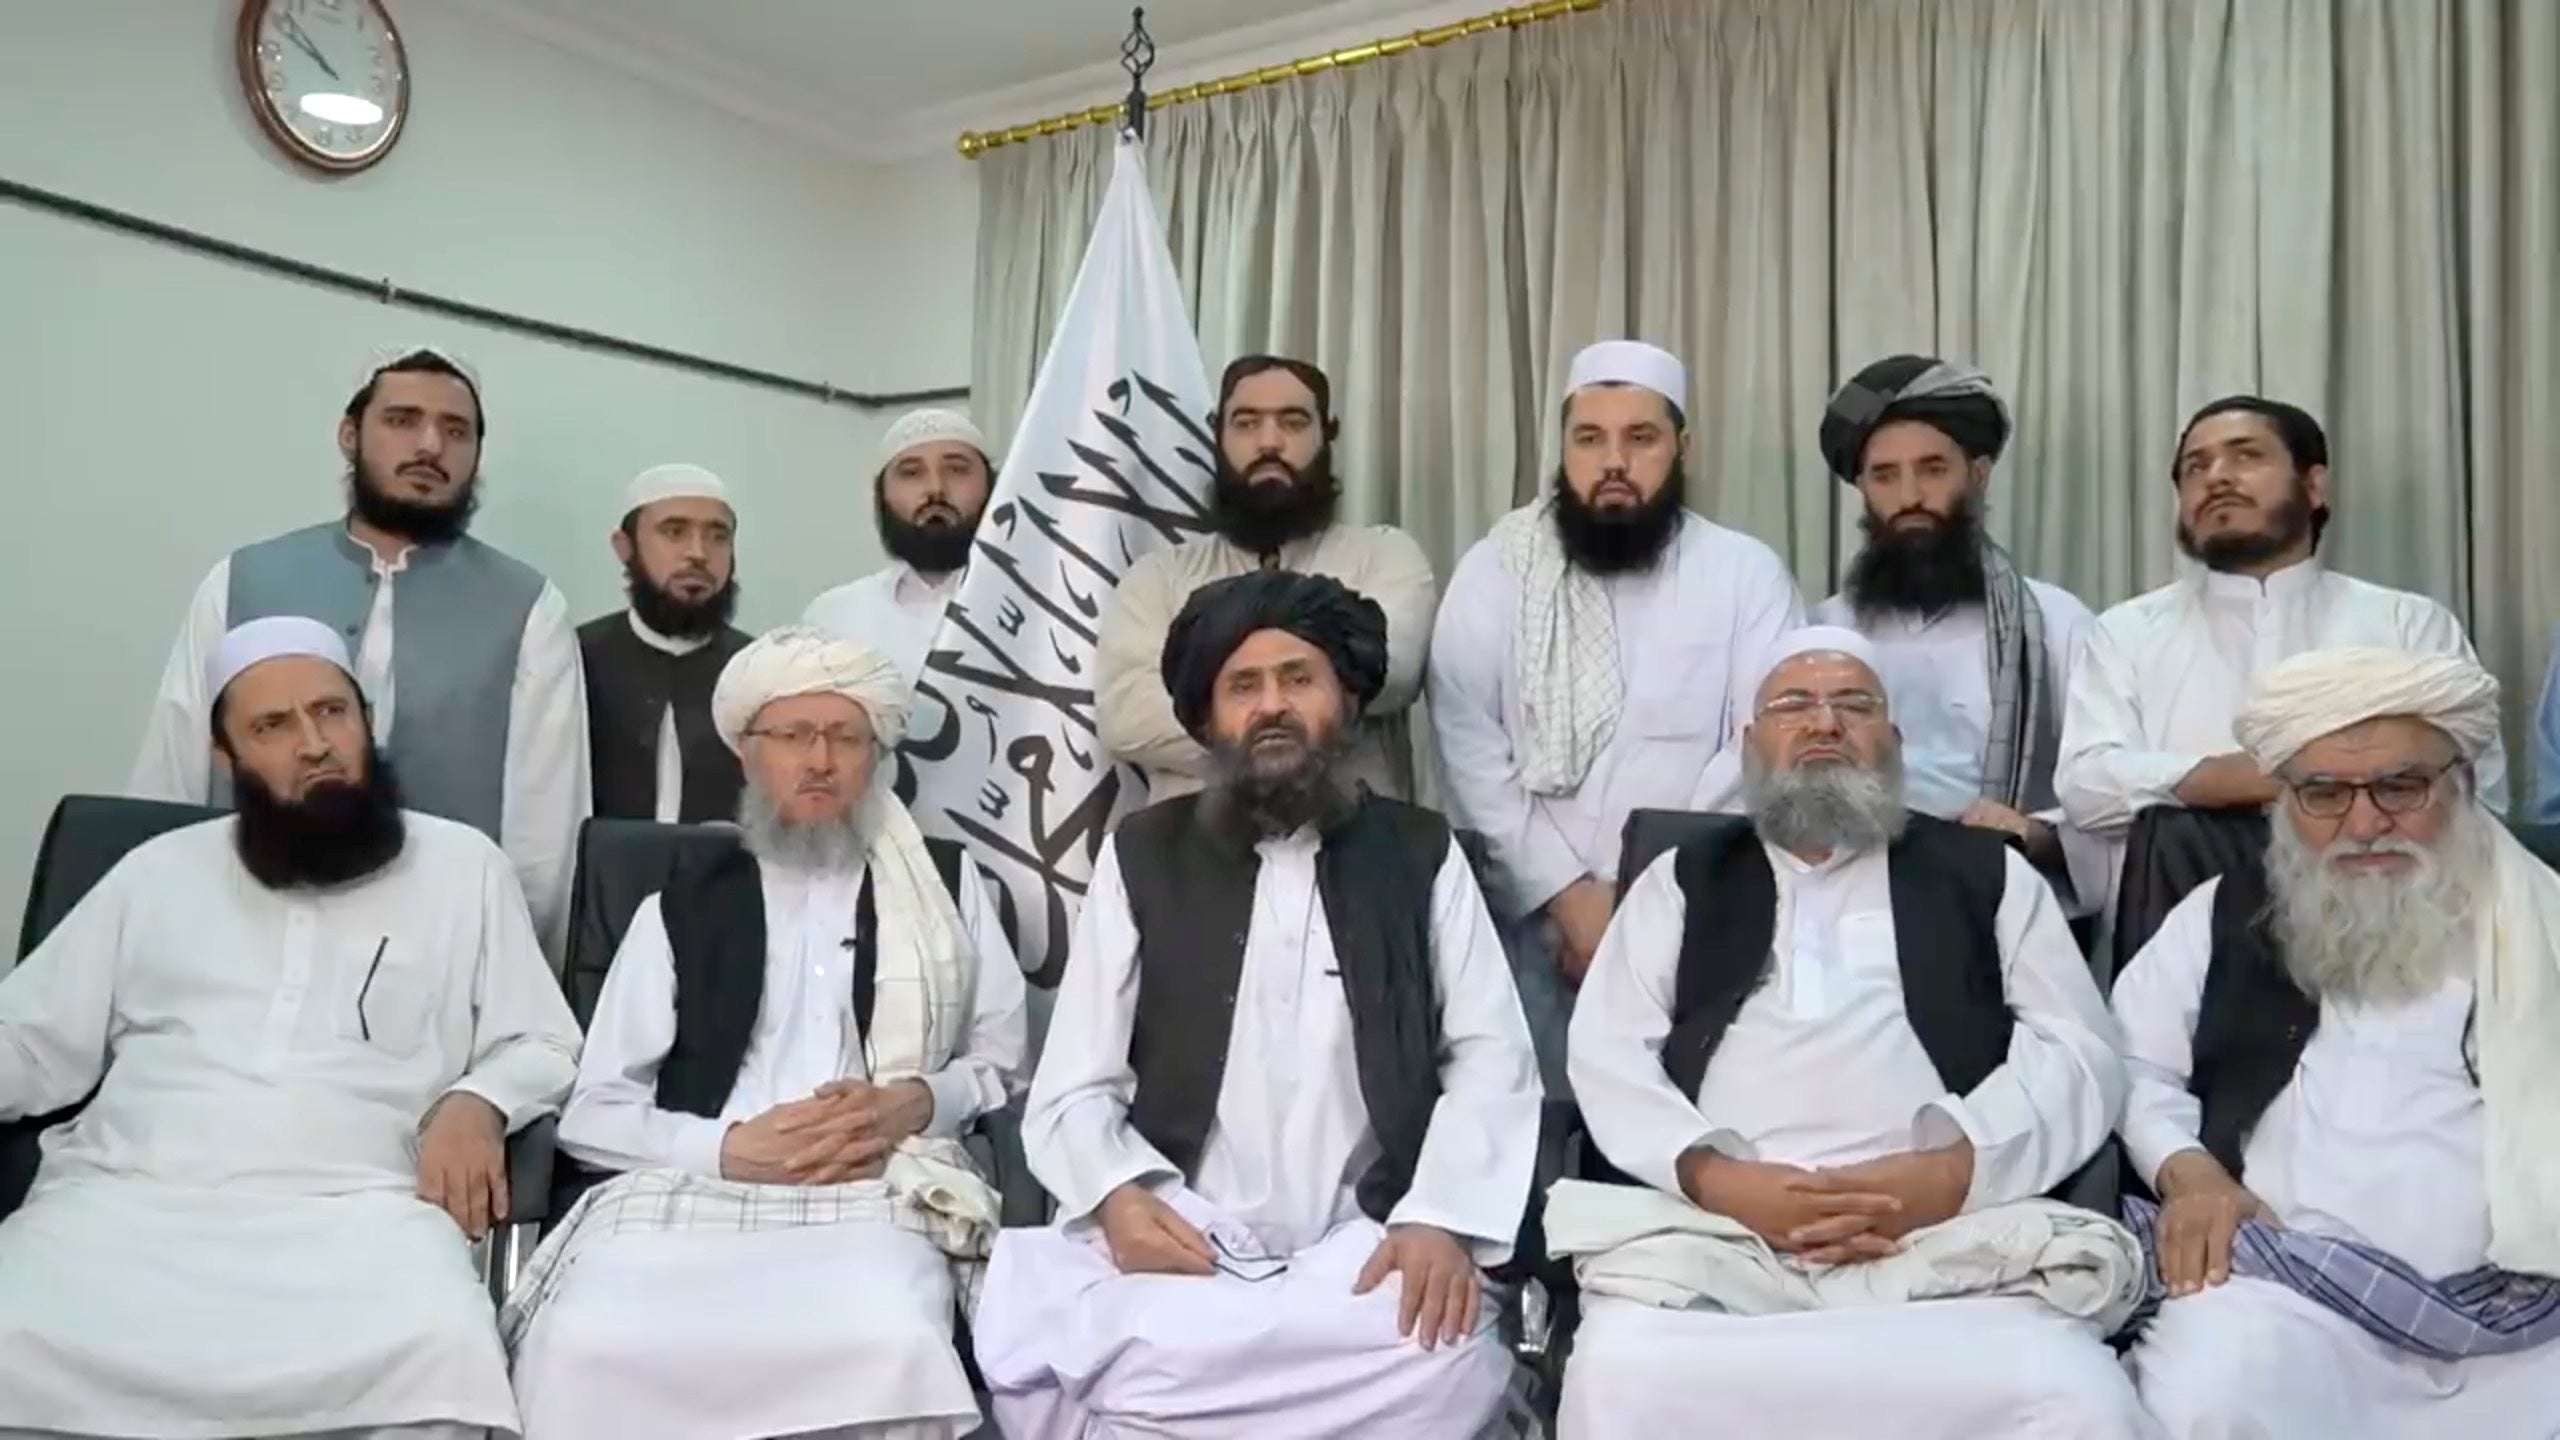 Altos funcionarios talibanes de antaño 7formarían parte de este nuevo gobierno.